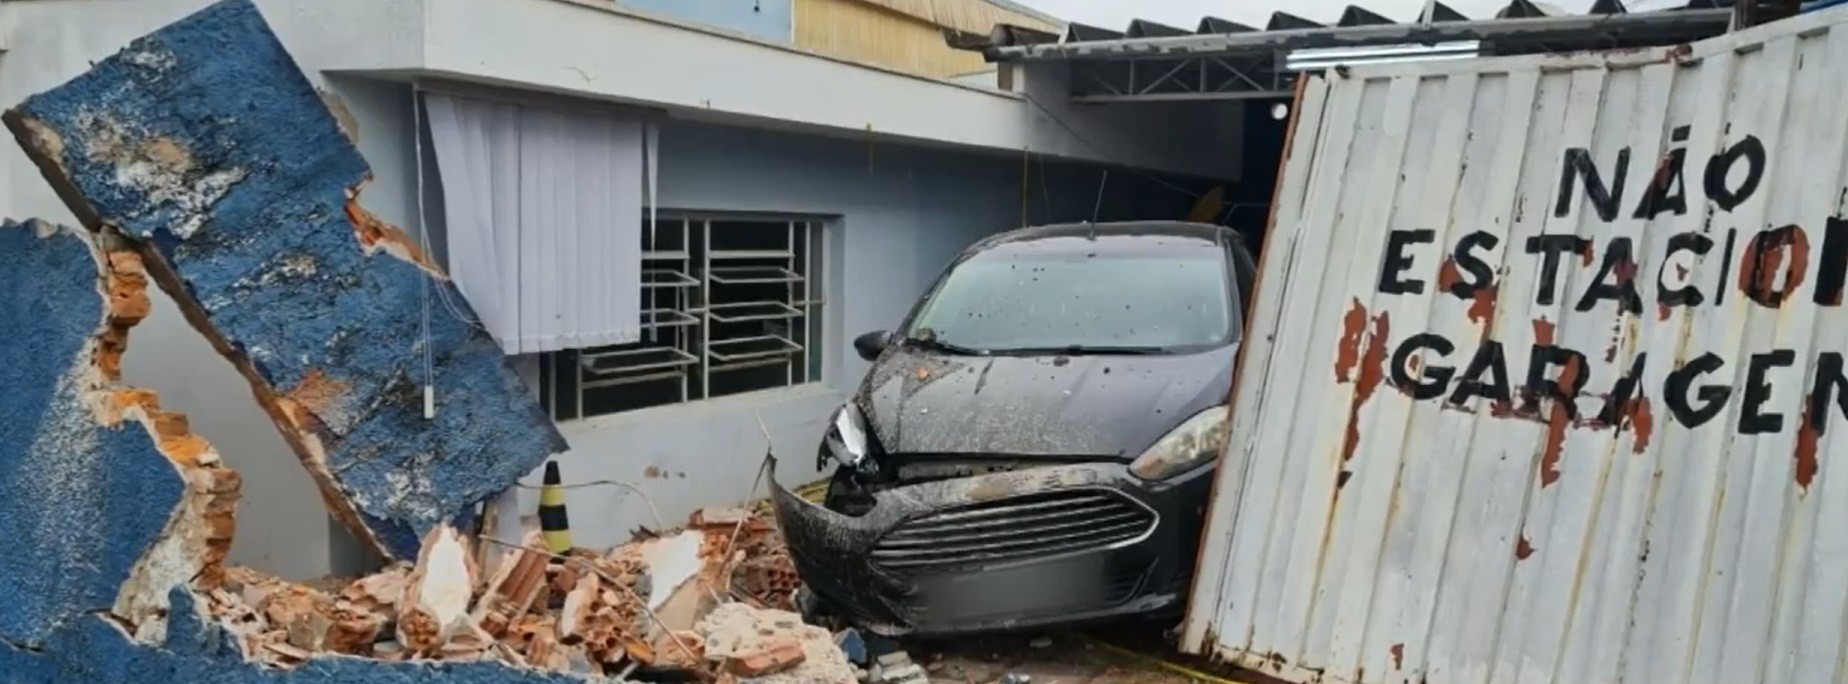 VÍDEO: Caminhão desgovernado invade escola de idiomas em São Pedro após motorista deixar cabine